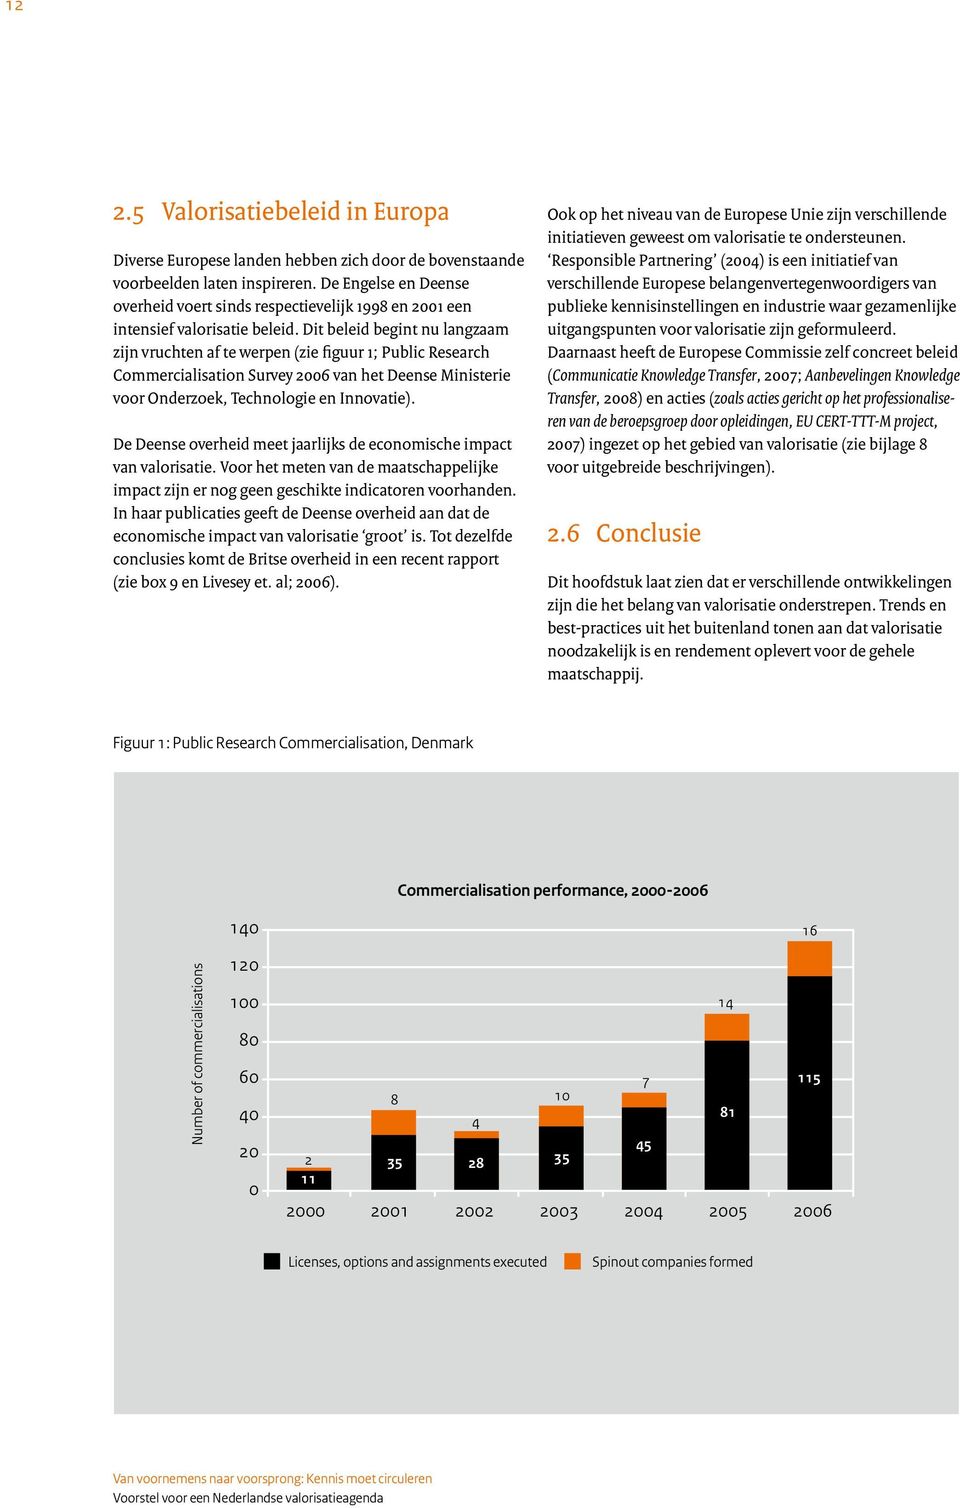 Dit beleid begint nu langzaam zijn vruchten af te werpen (zie figuur 1; Public Research Commercialisation Survey 2006 van het Deense Ministerie voor Onderzoek, Technologie en Innovatie).